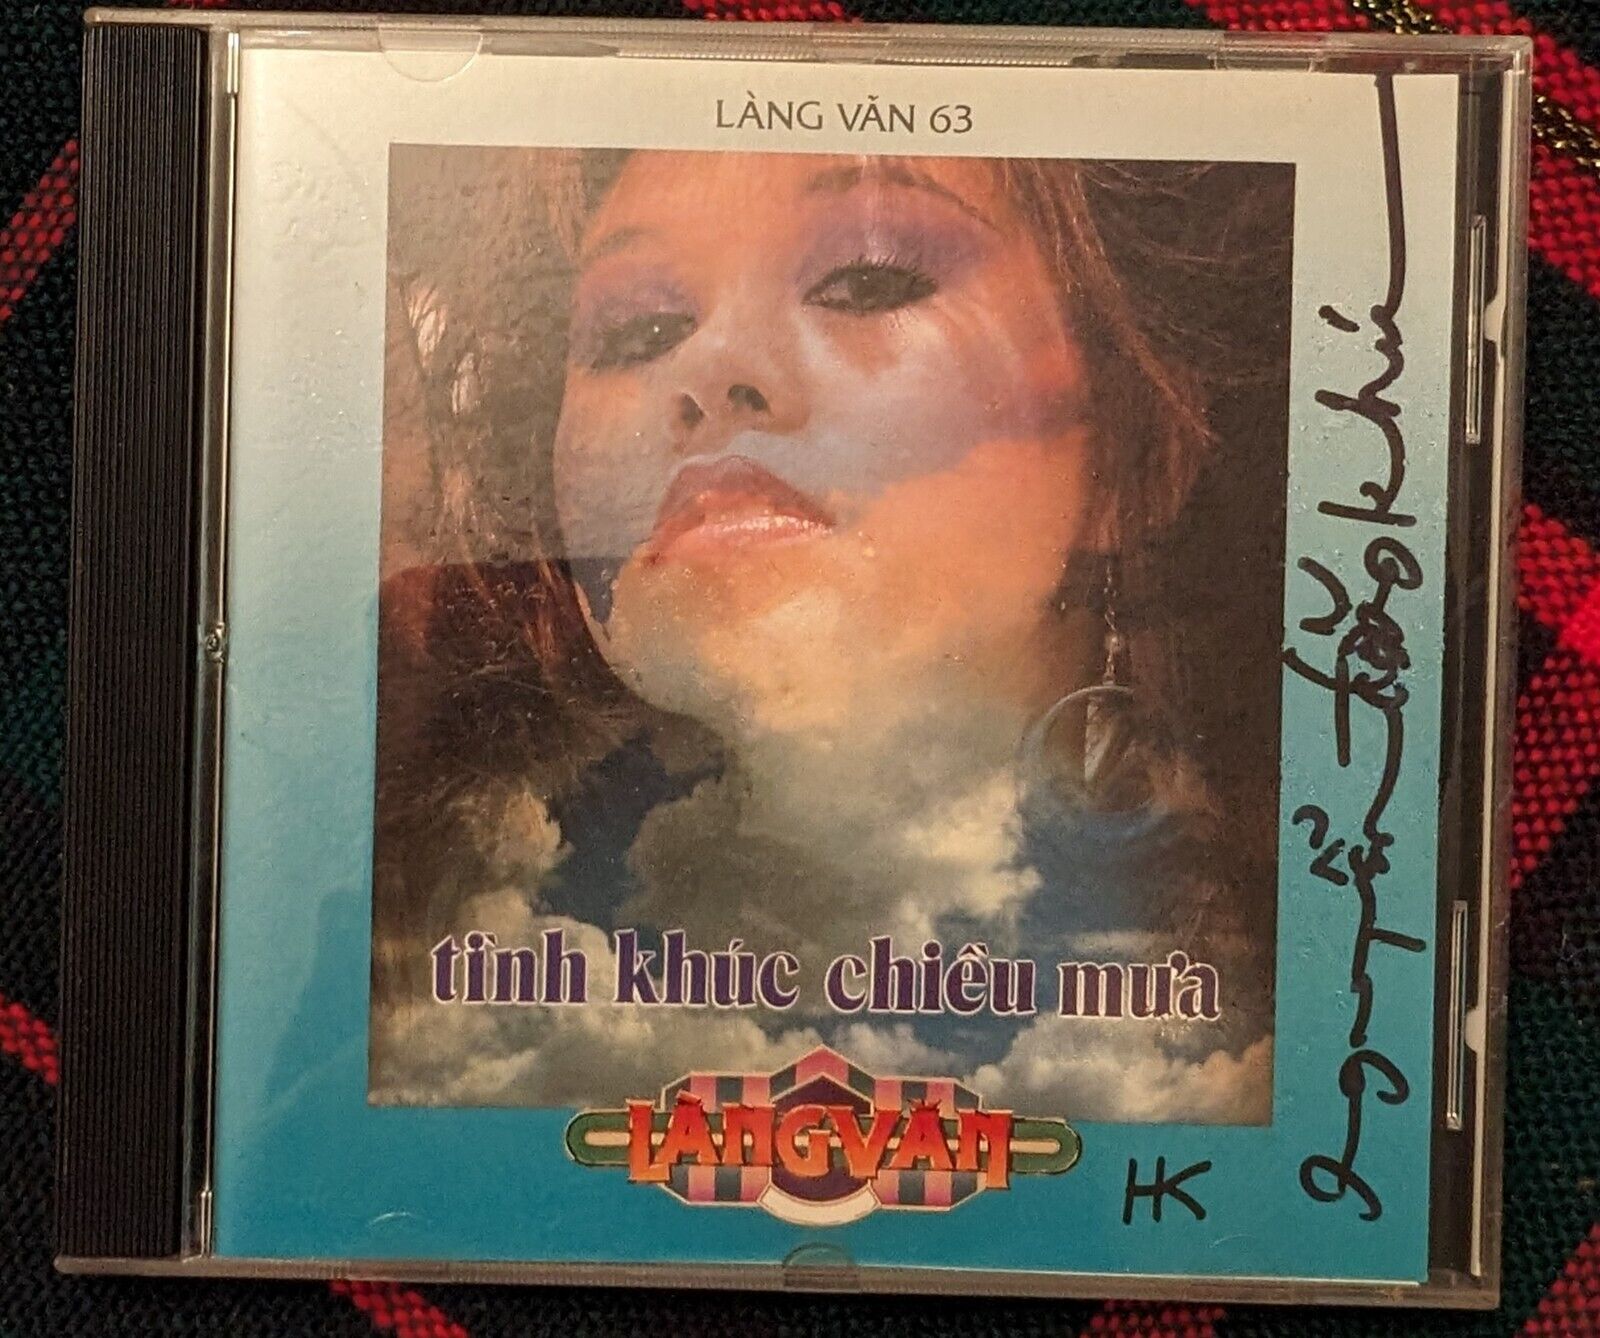 RARE VINTAGE ORIGINAL VIETNAMESE MUSIC CD: Lang Van 63 - Tinh Khuc Chieu Mua